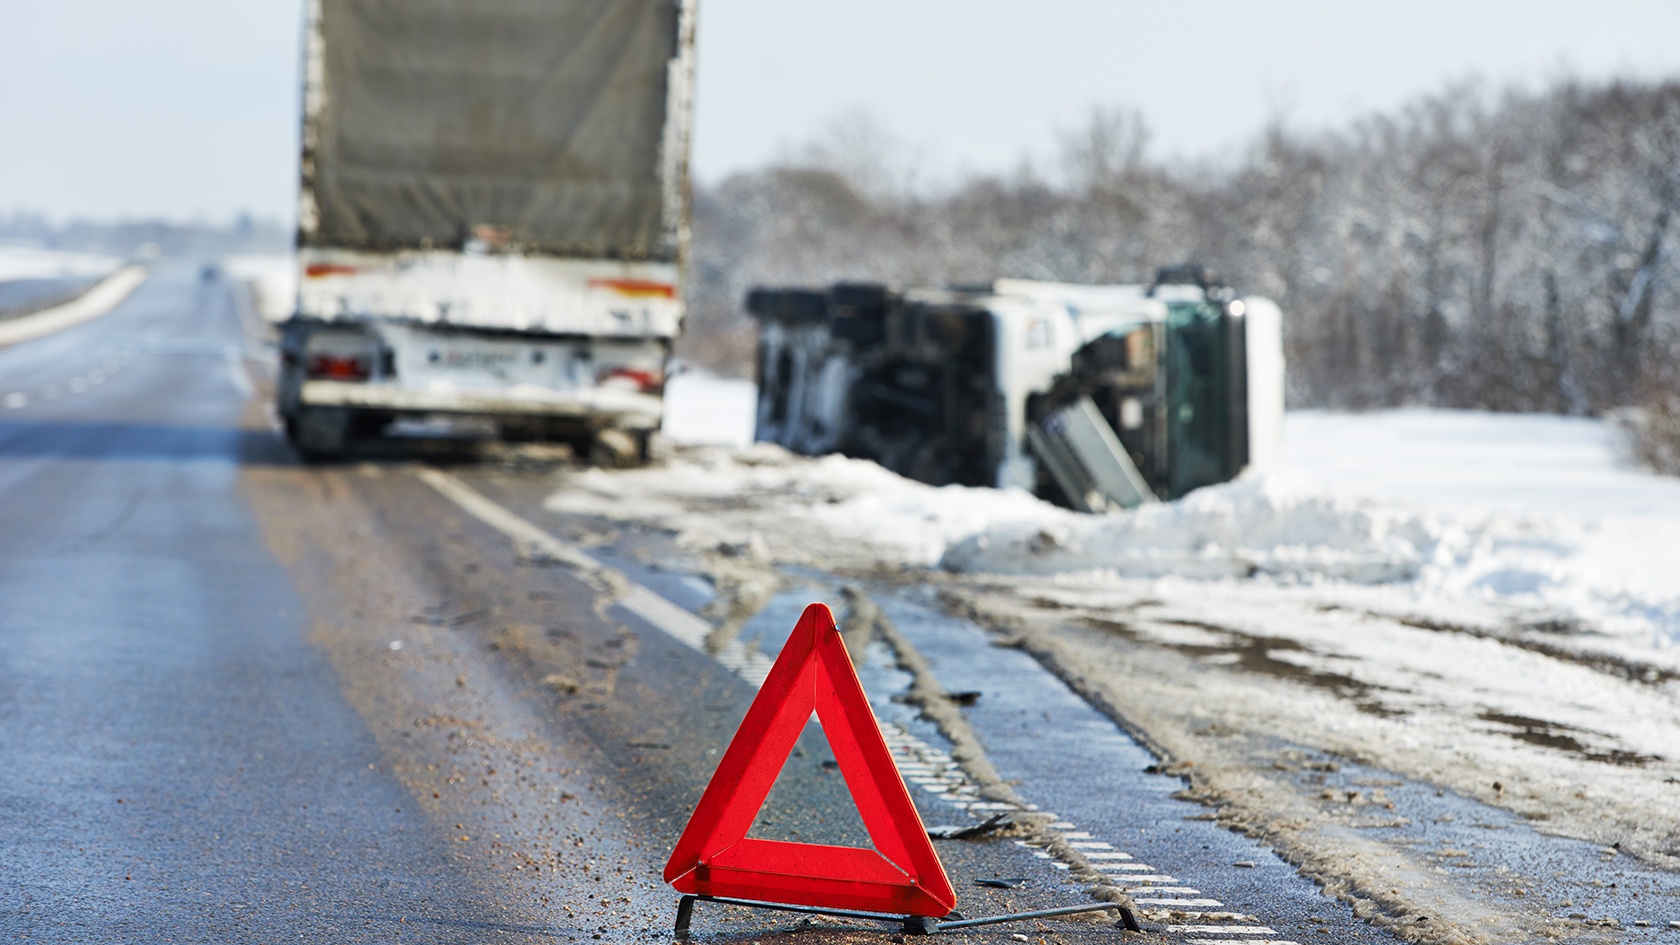 Десять человек пострадали с начала года в дорожных авариях с участием грузовиков в Брянске